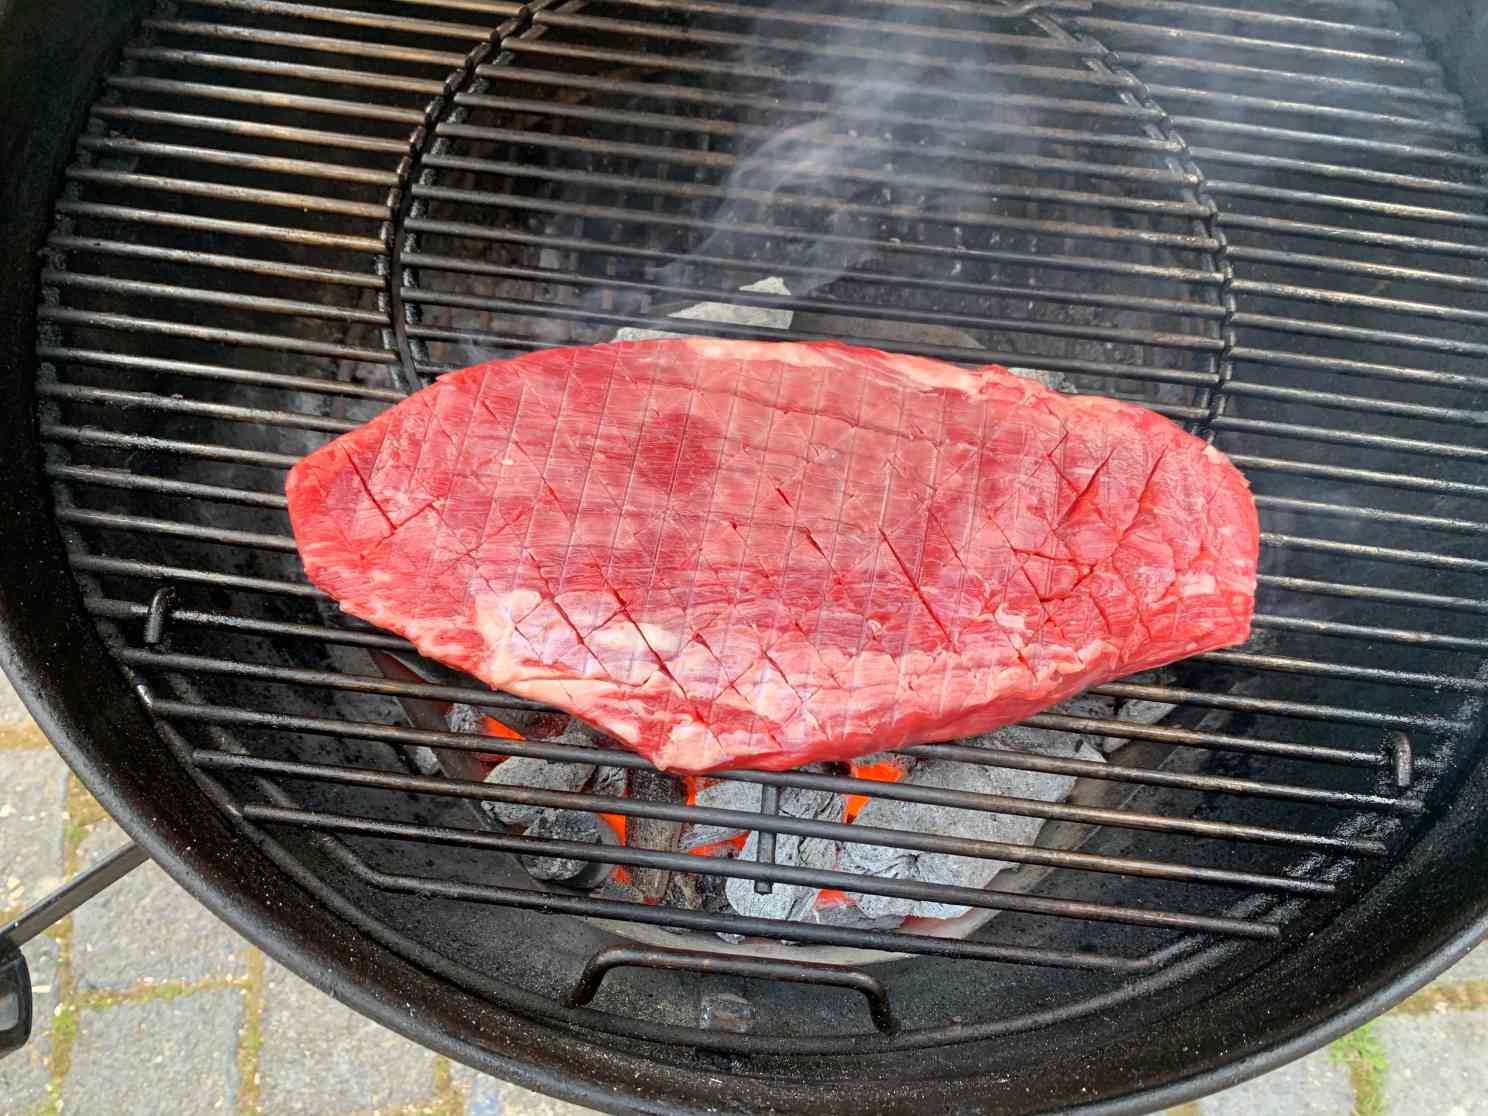 Flank Steak wird direkt über den heißen Kohlen gegrillt